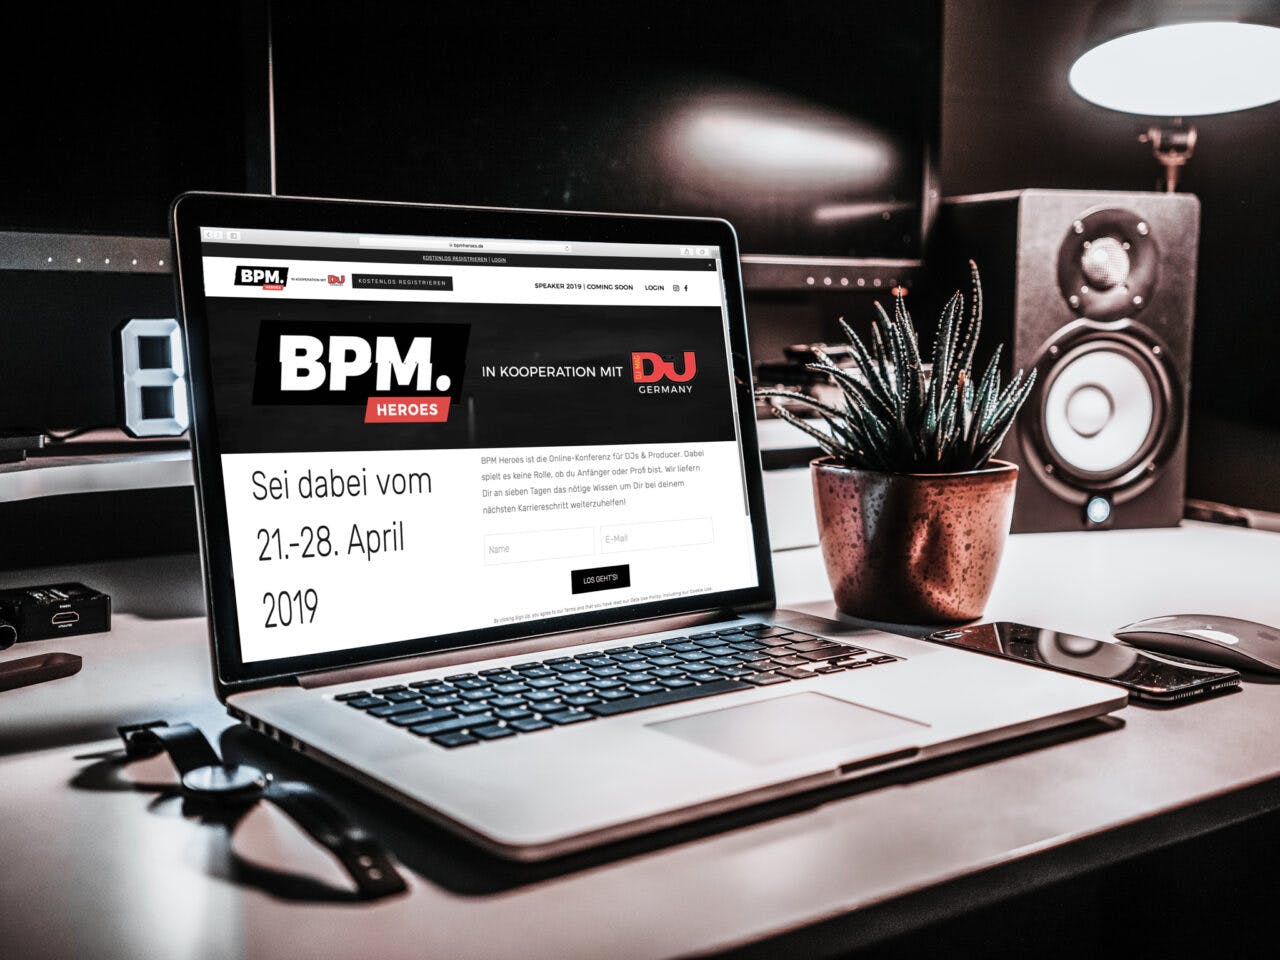 BPM Heroes 2019: Das ist die Online-Konferenz für DJs & Producer